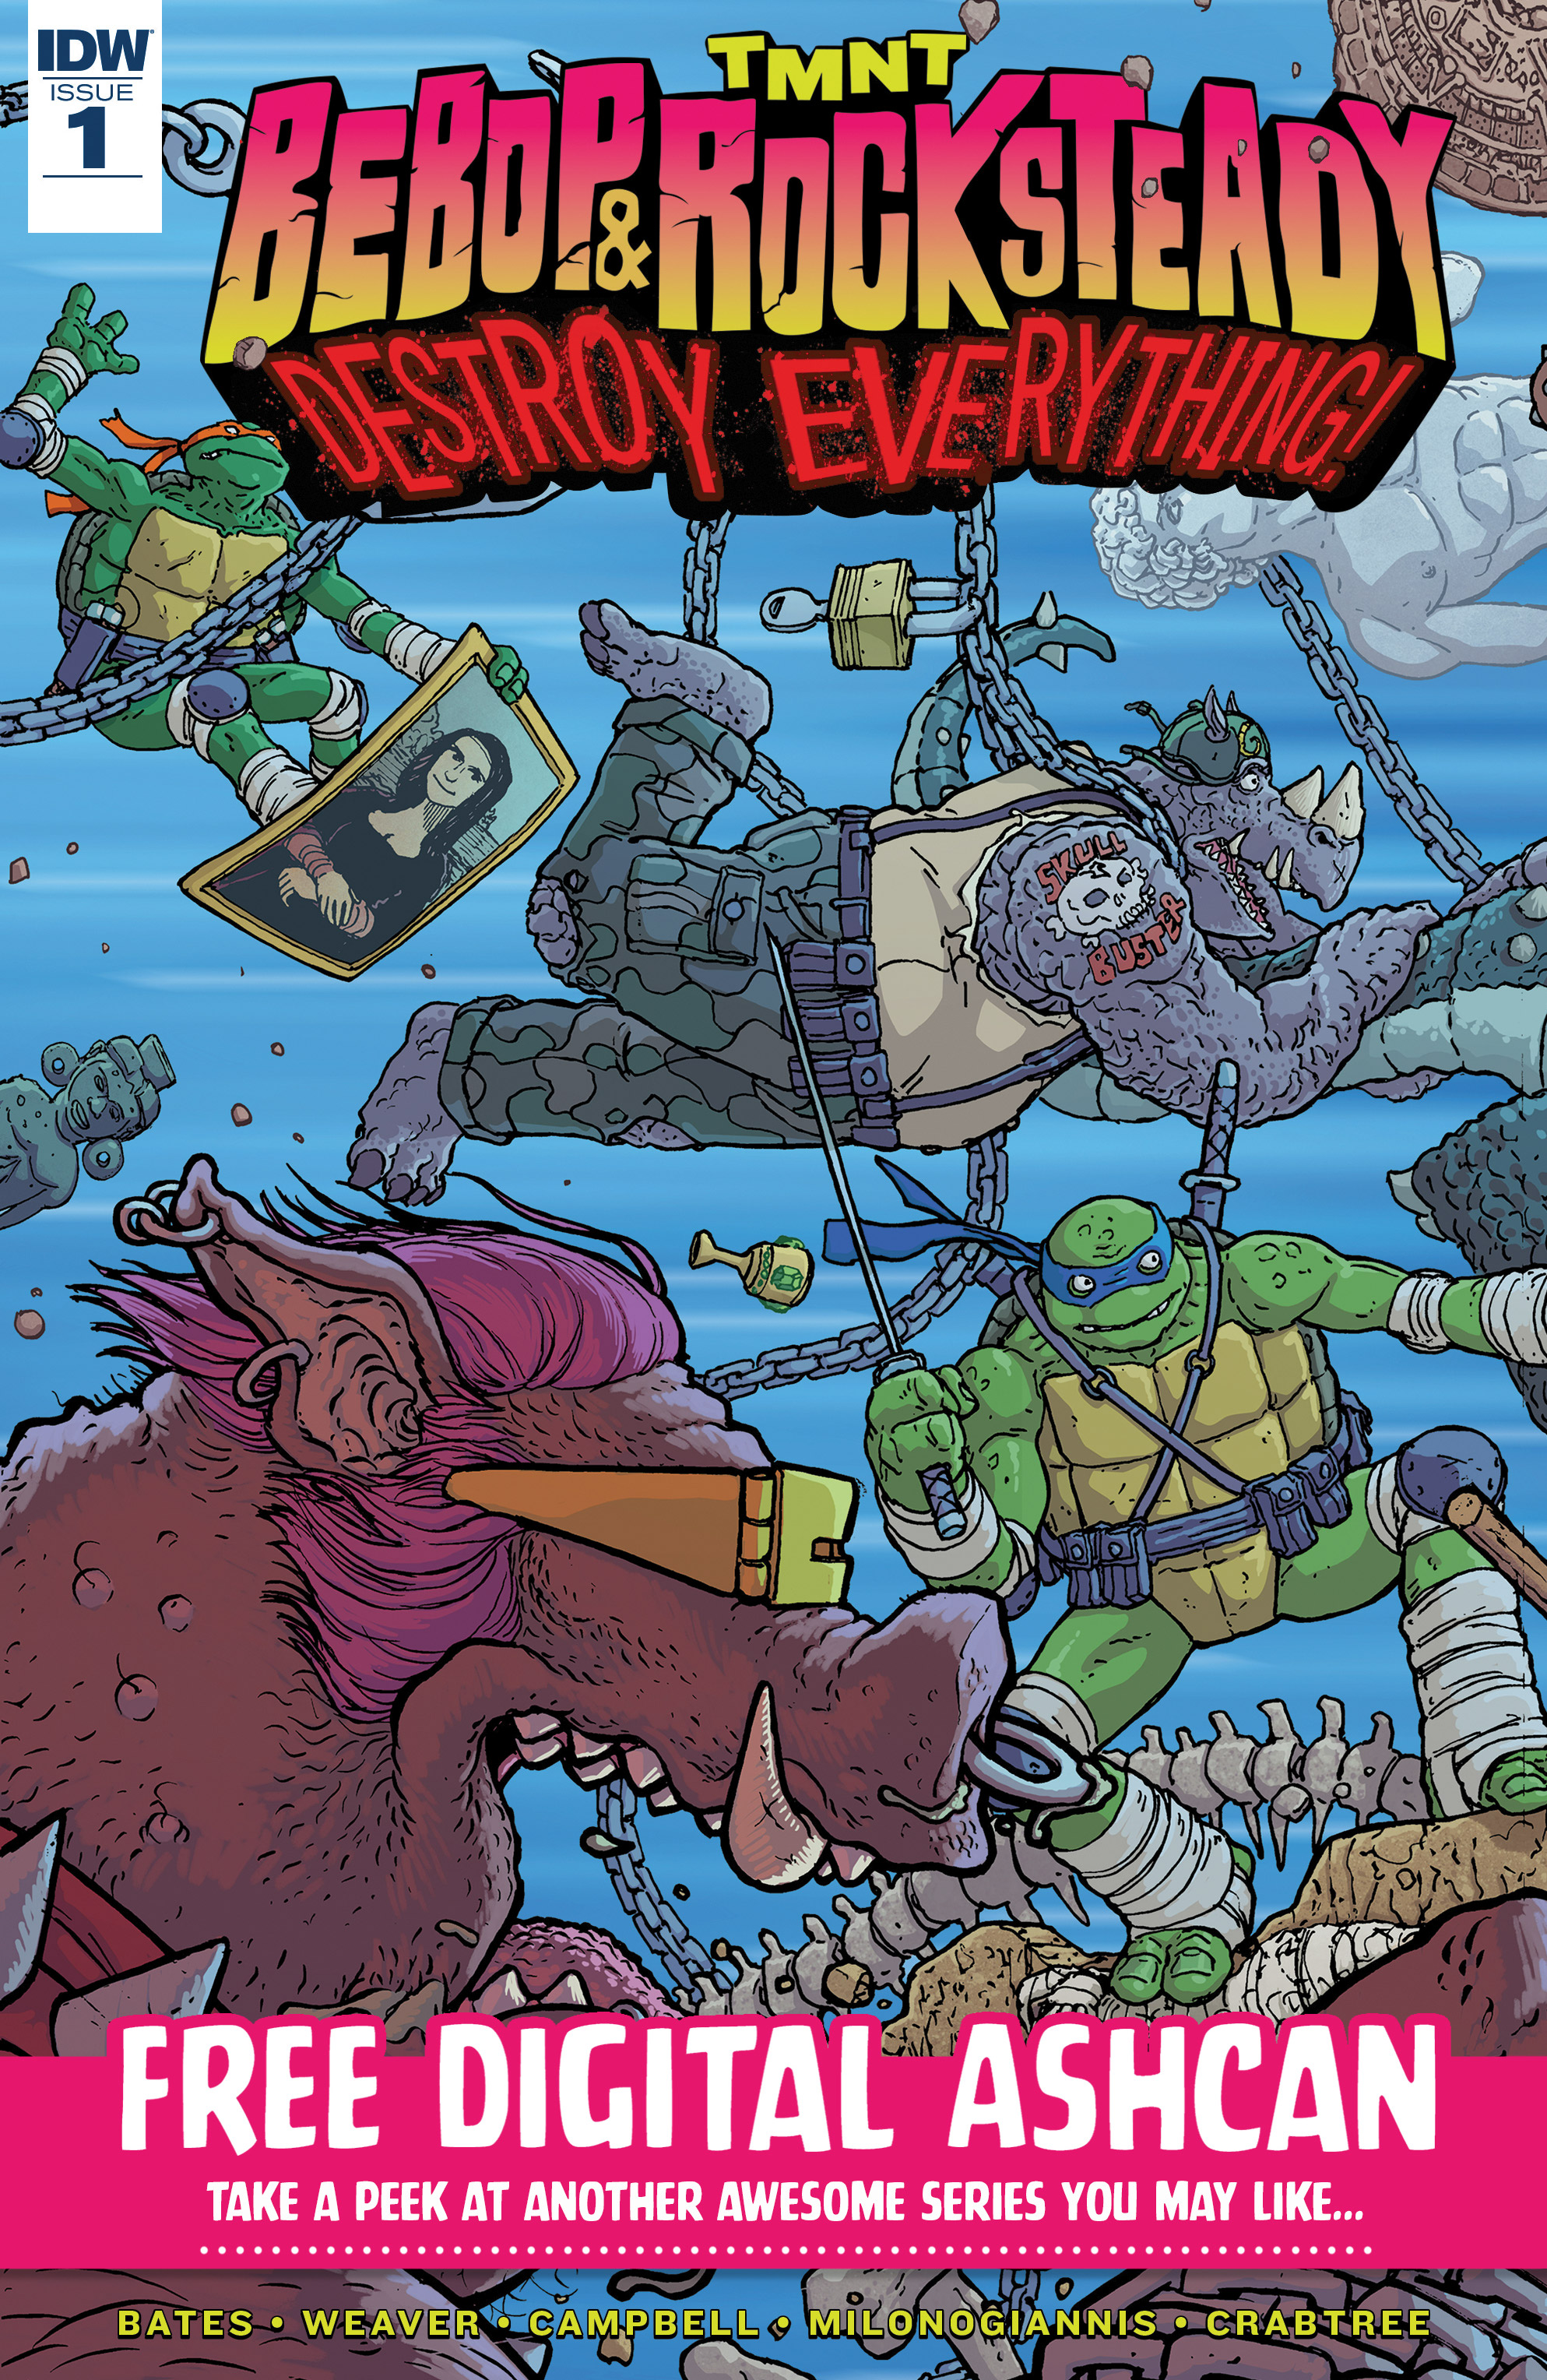 Read online Teenage Mutant Ninja Turtles: Urban Legends comic -  Issue #15 - 22